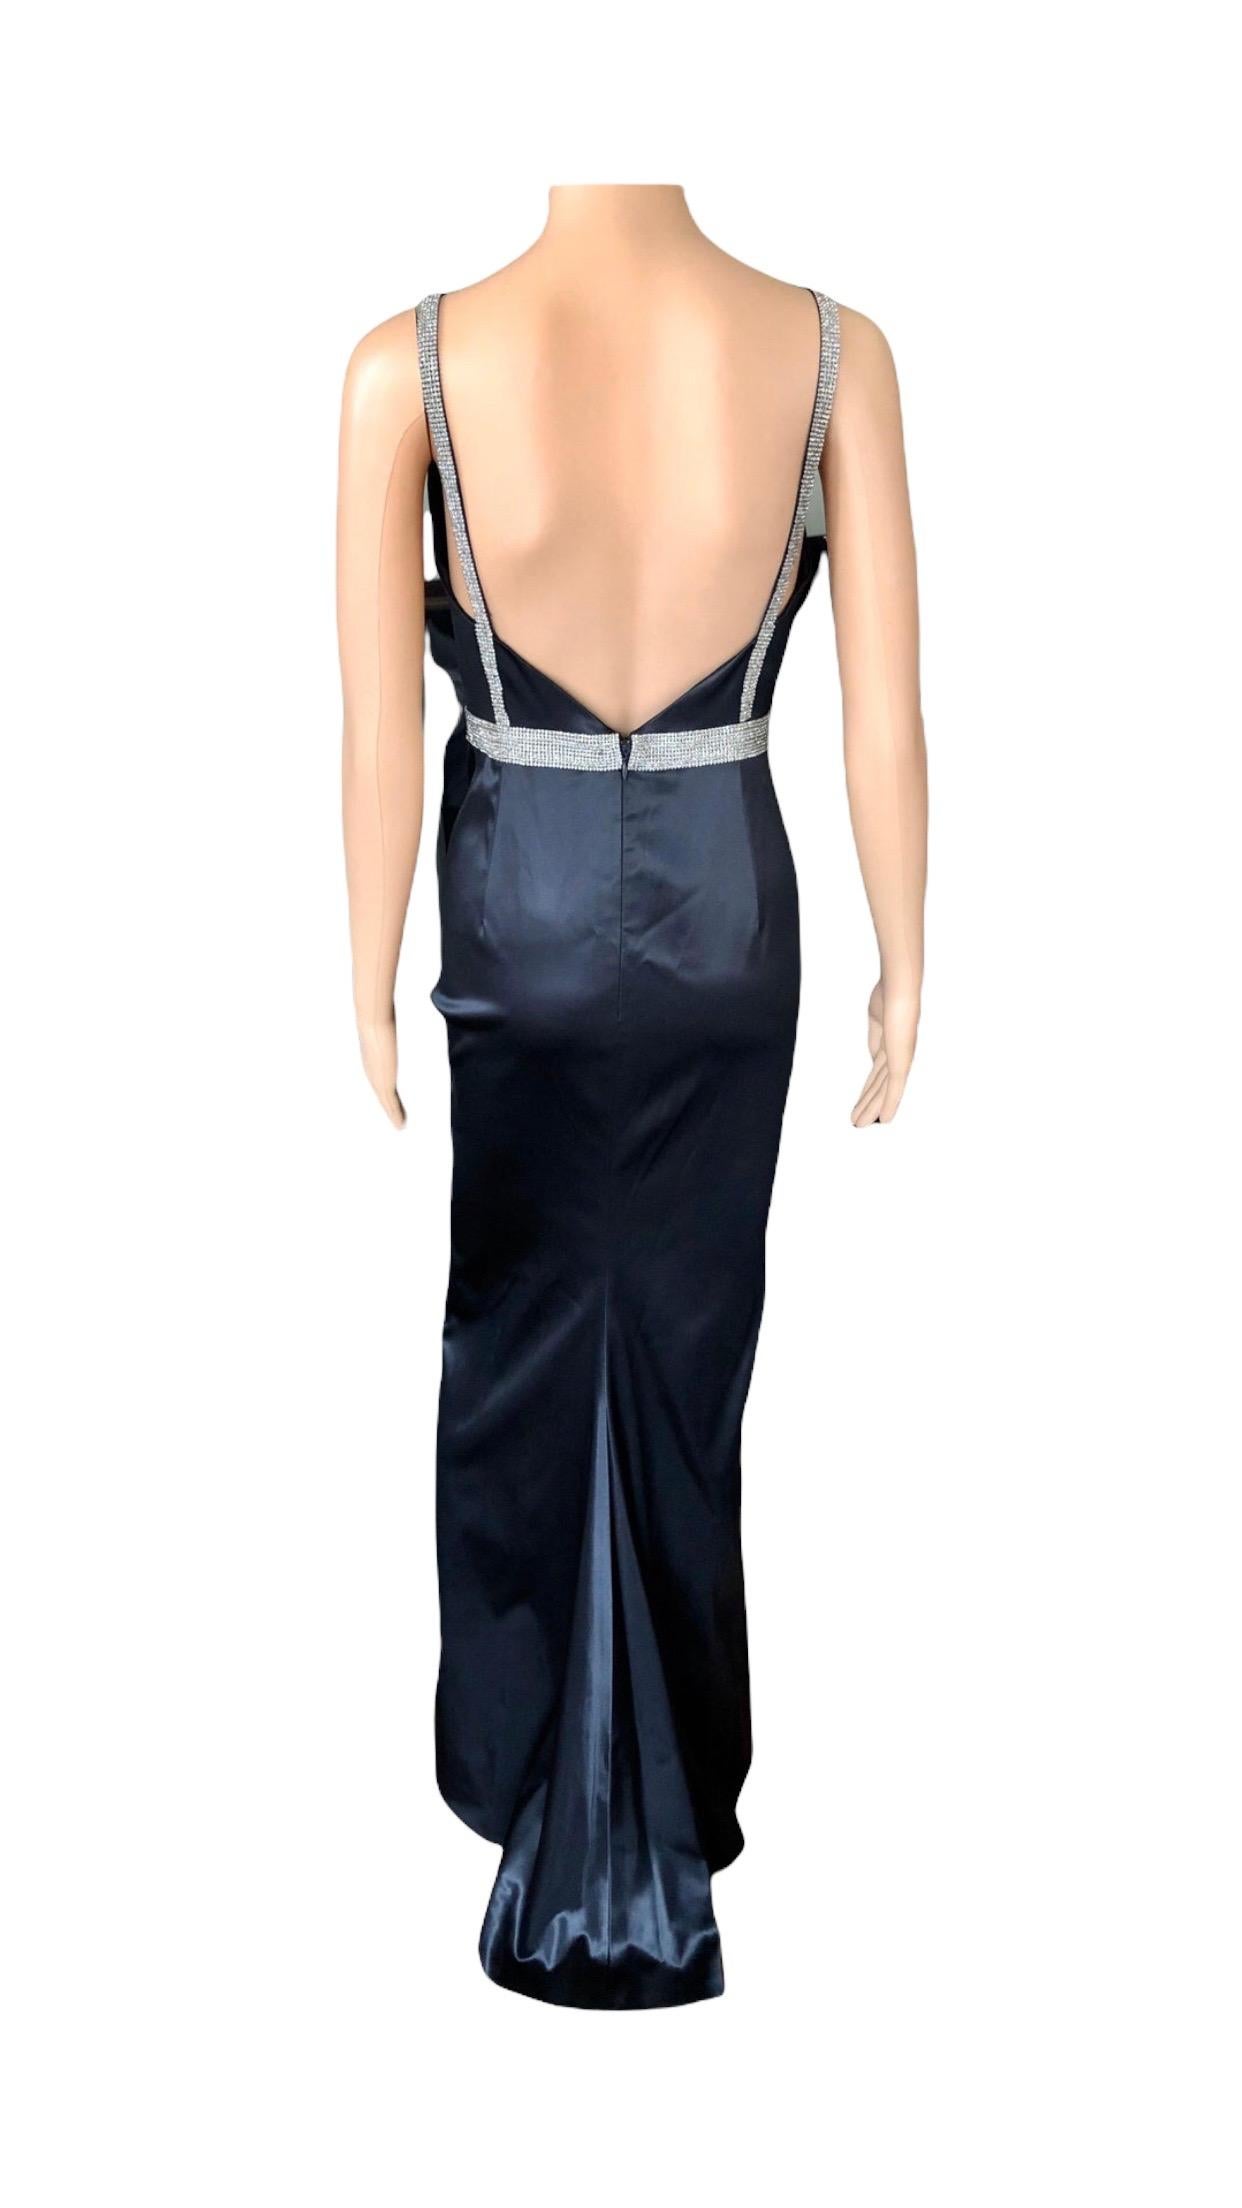 Dolce & Gabbana S/S 2004 Embellished Crystal Belt Satin Black Evening Dress Gown For Sale 3